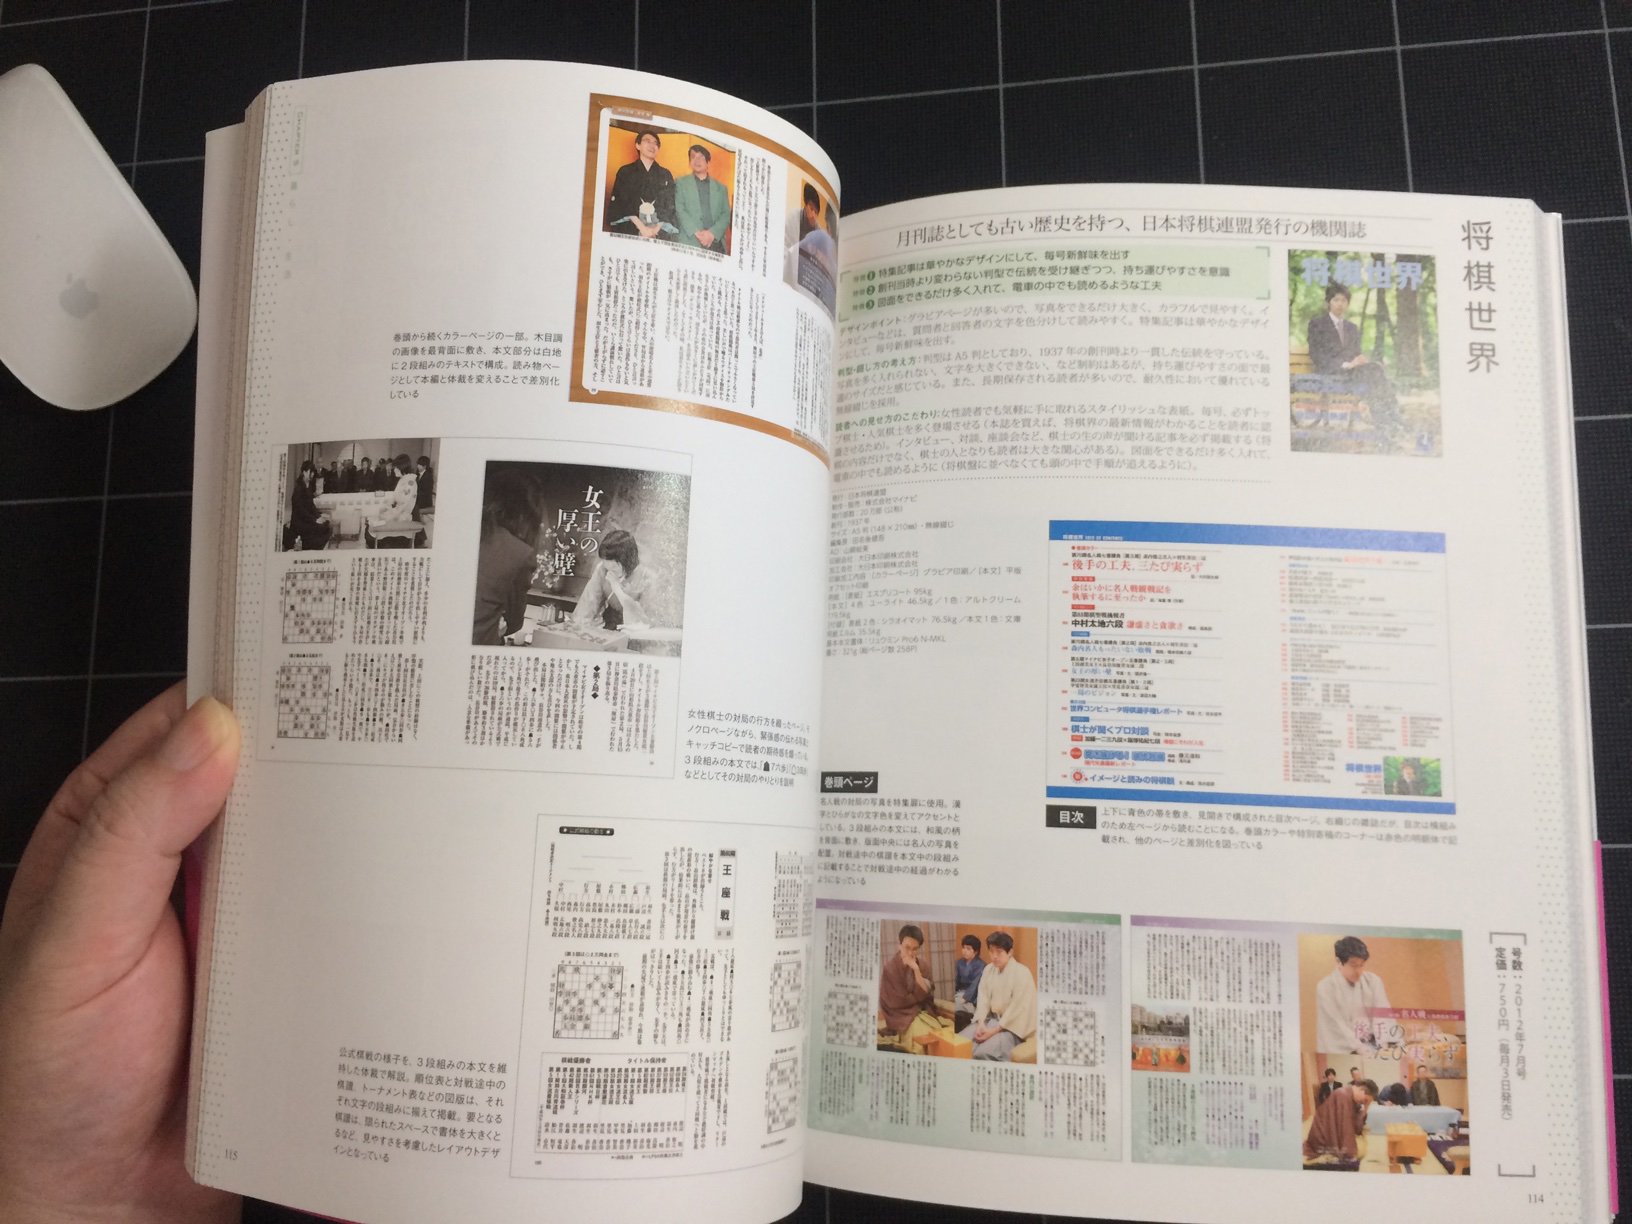 D Studio 久しぶりにデザイン本を購入 売れている雑誌 書籍にはデザインの法則があった 税込2 592円 出版社 ソシム かなり多くレイアウト見本が載っています 単純だからこそ難しい誌面レイアウトの参考にさせて頂きます デザイン本 Dtp